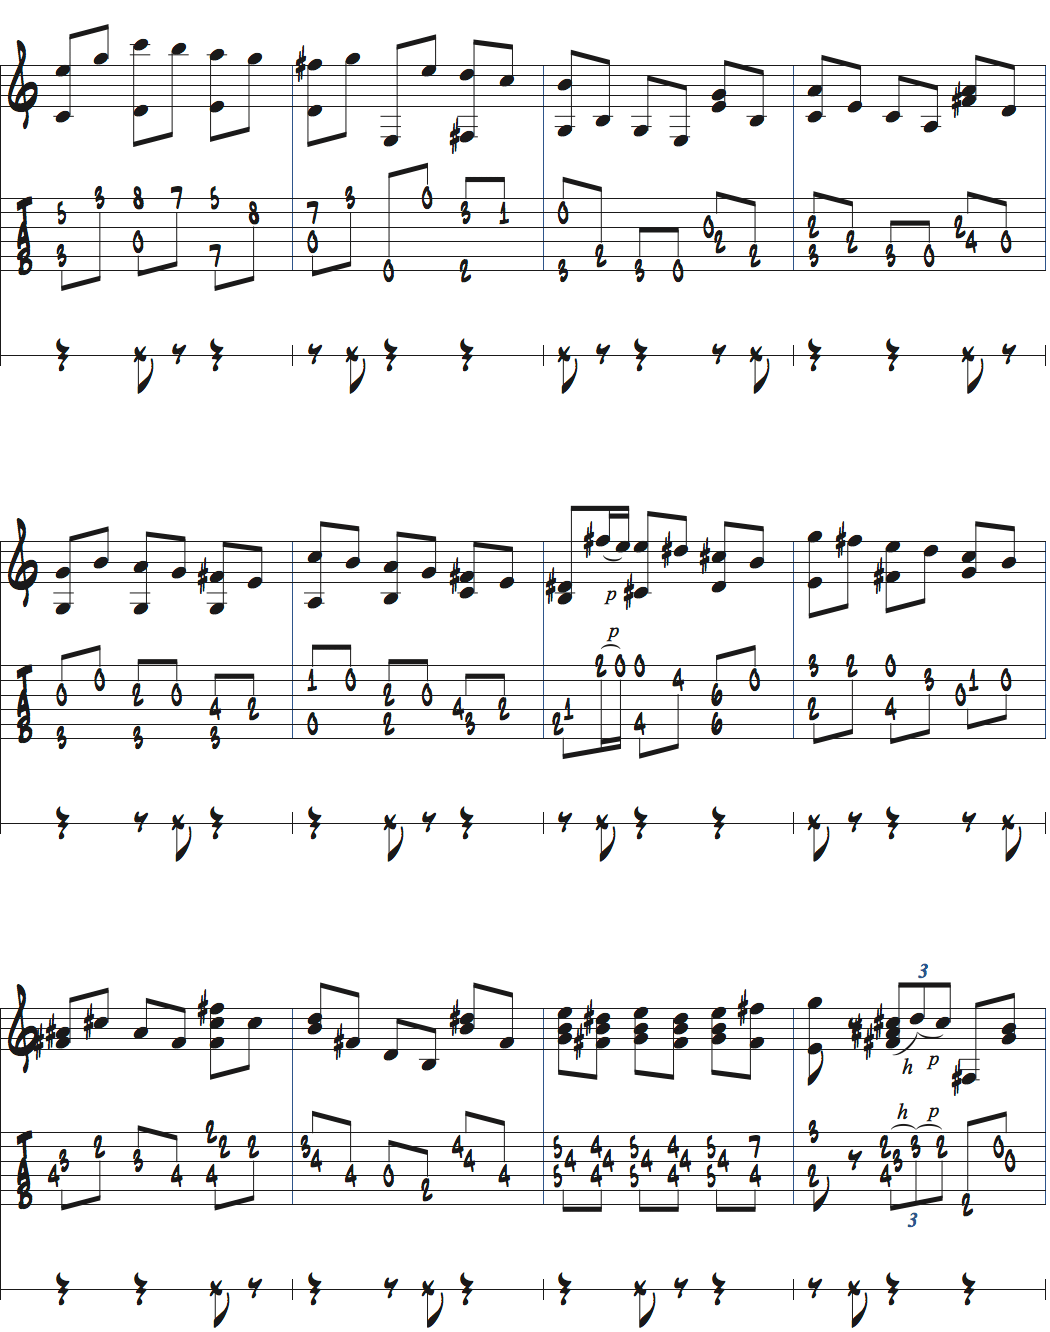 メトロノームを2拍半ごとに鳴らして練習するストレートのノリページ3楽譜